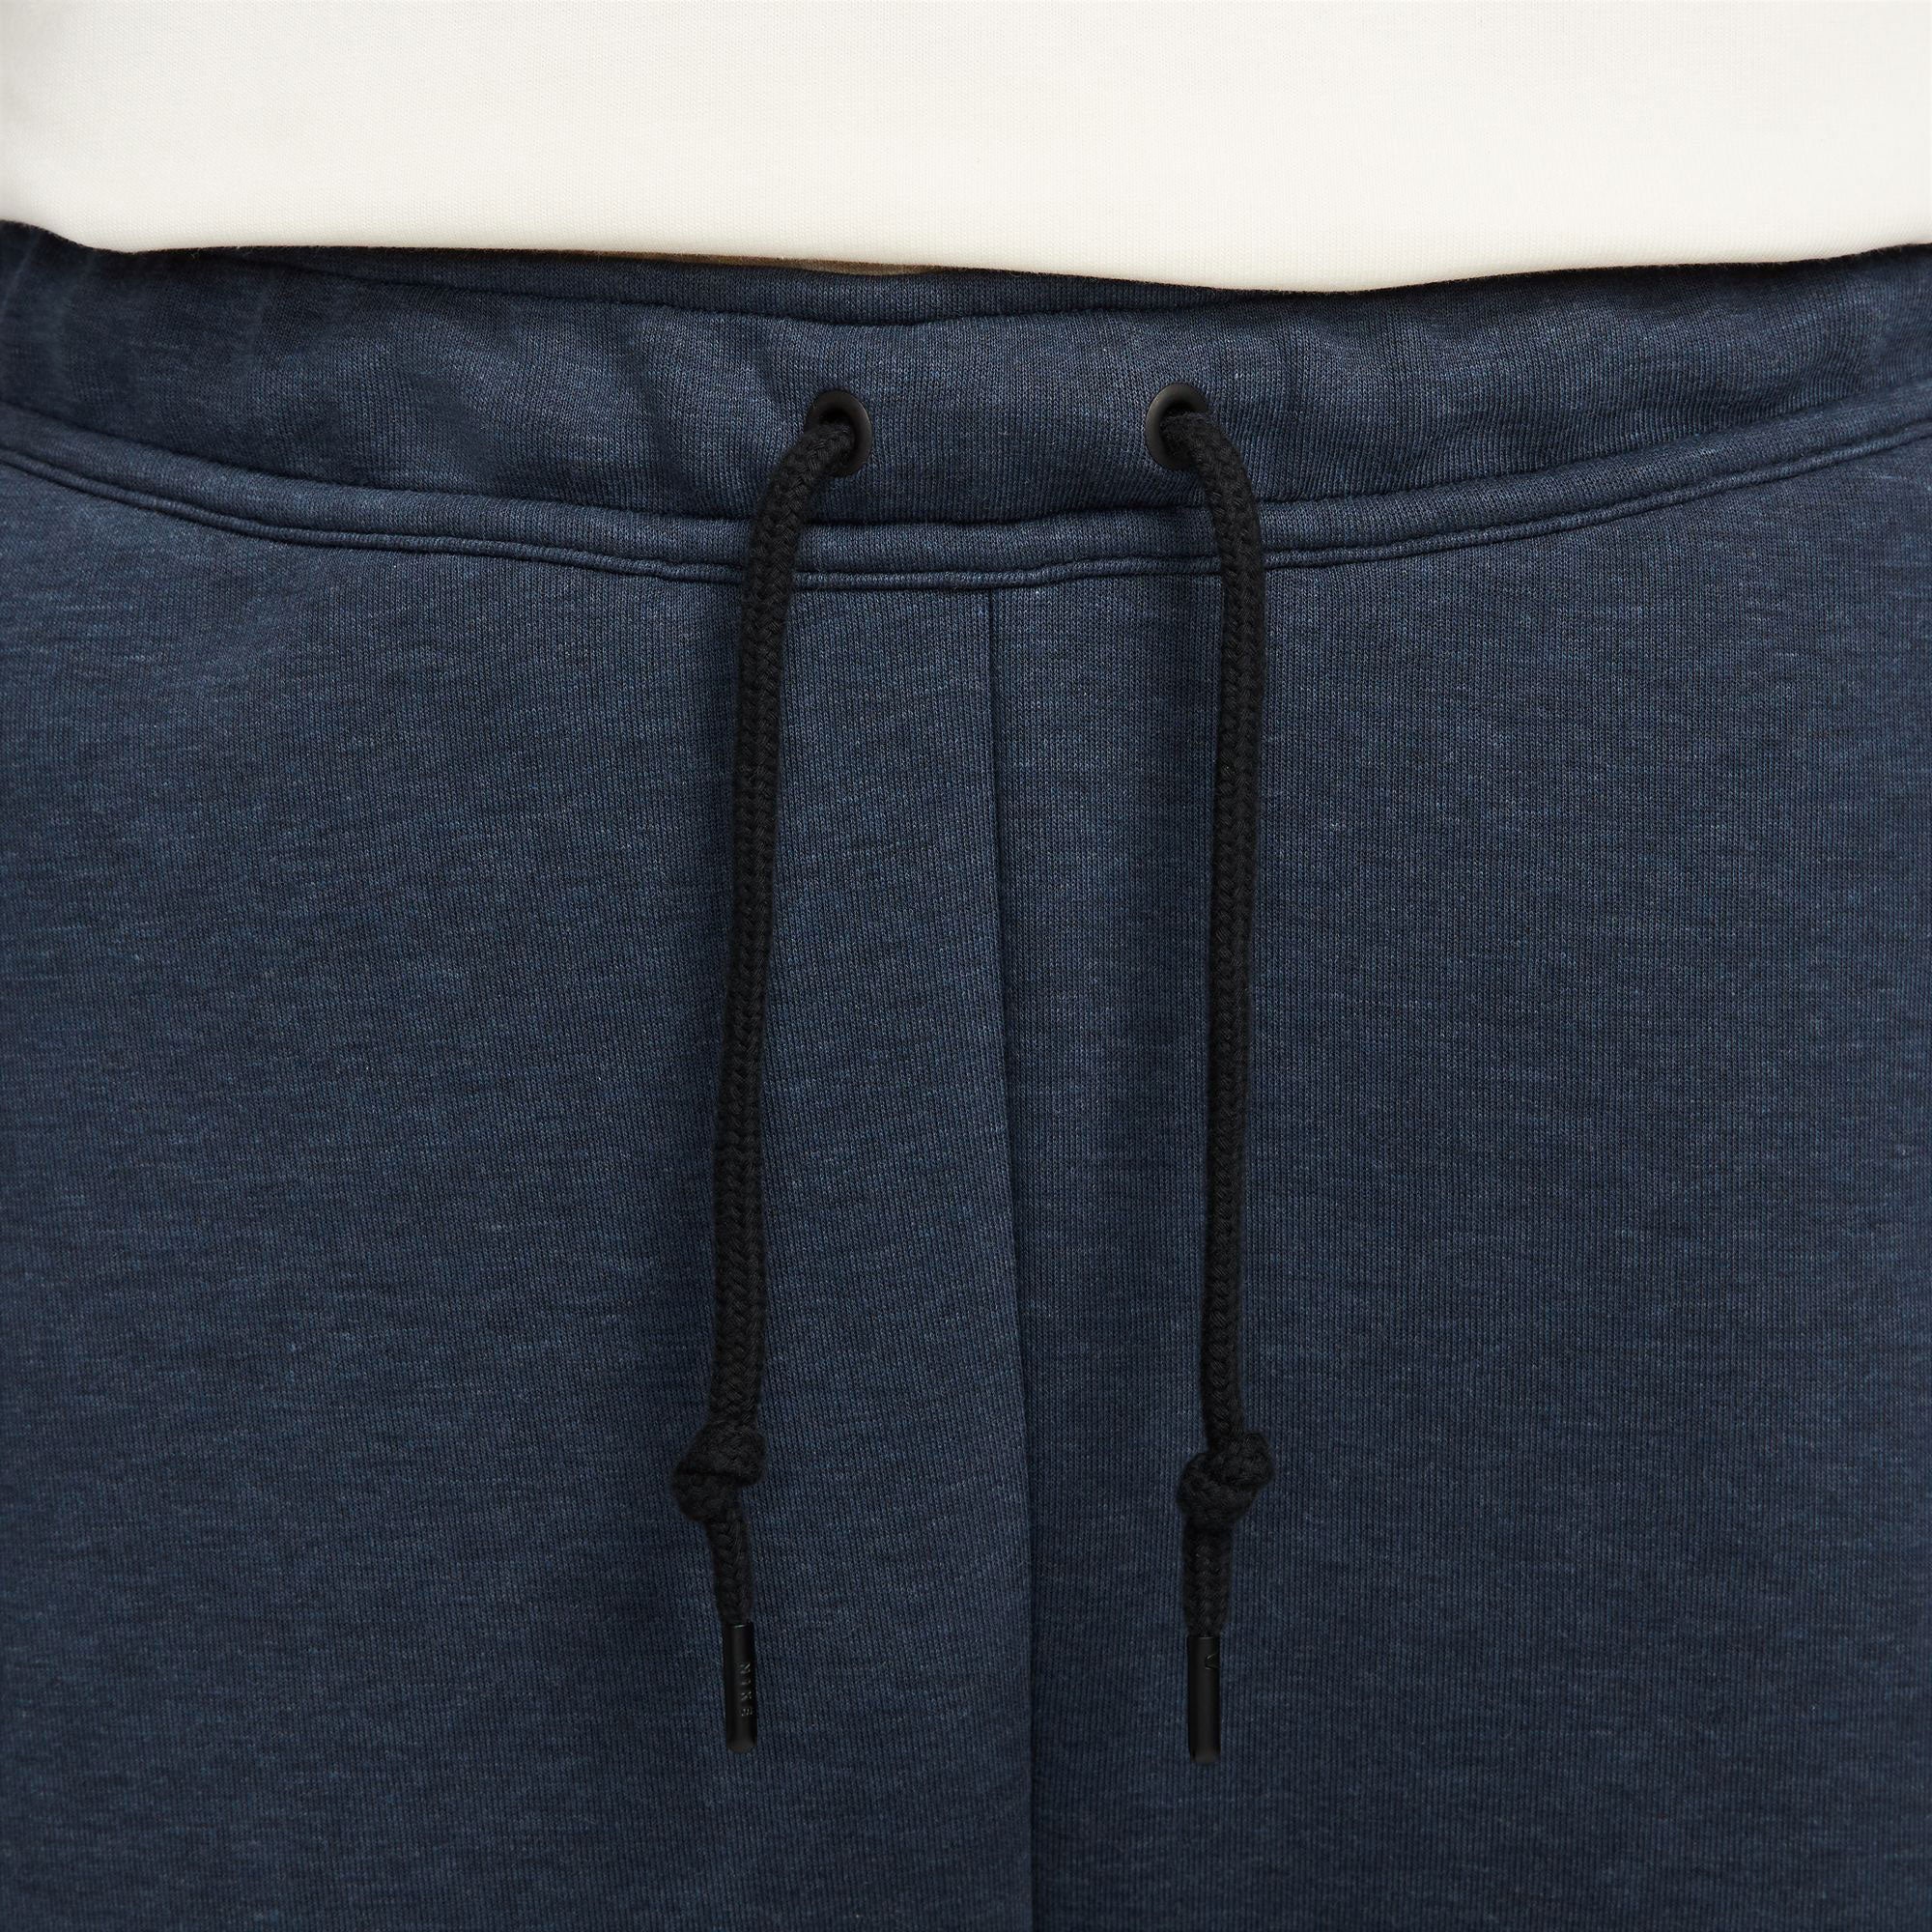 Nike Tech Fleece Men's Pants Dark Blue (4)